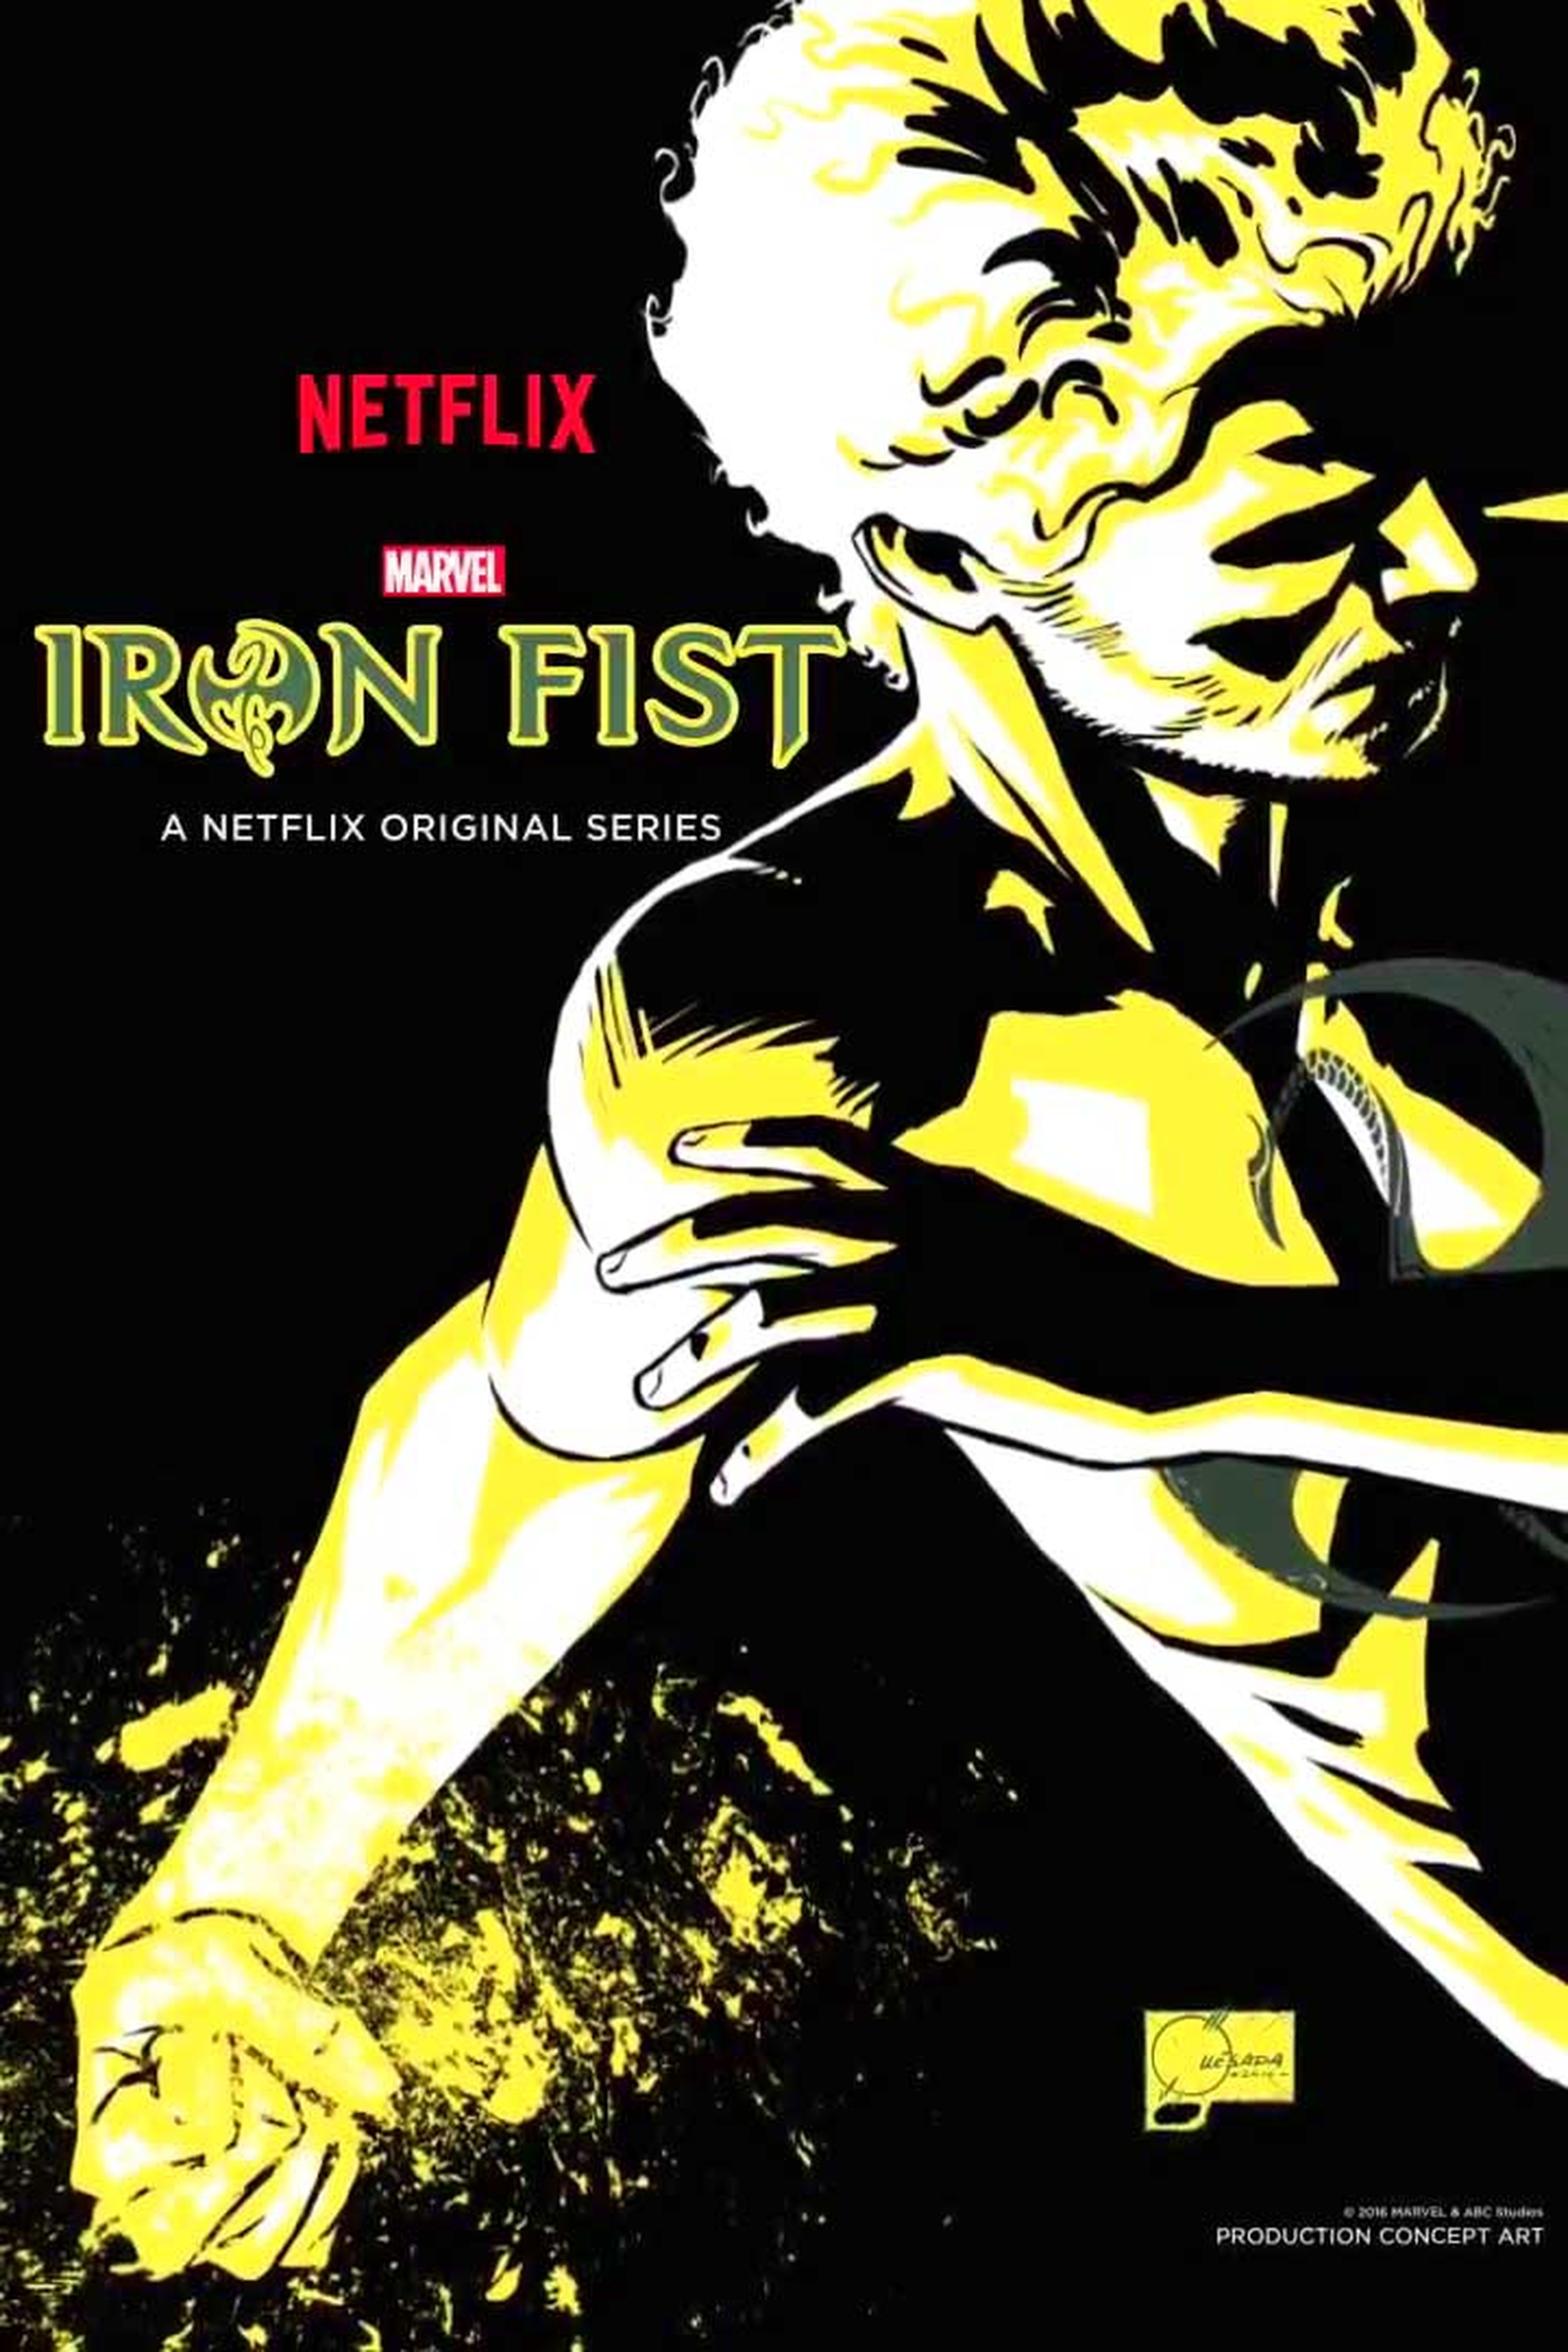 6. Iron Fist (2017)